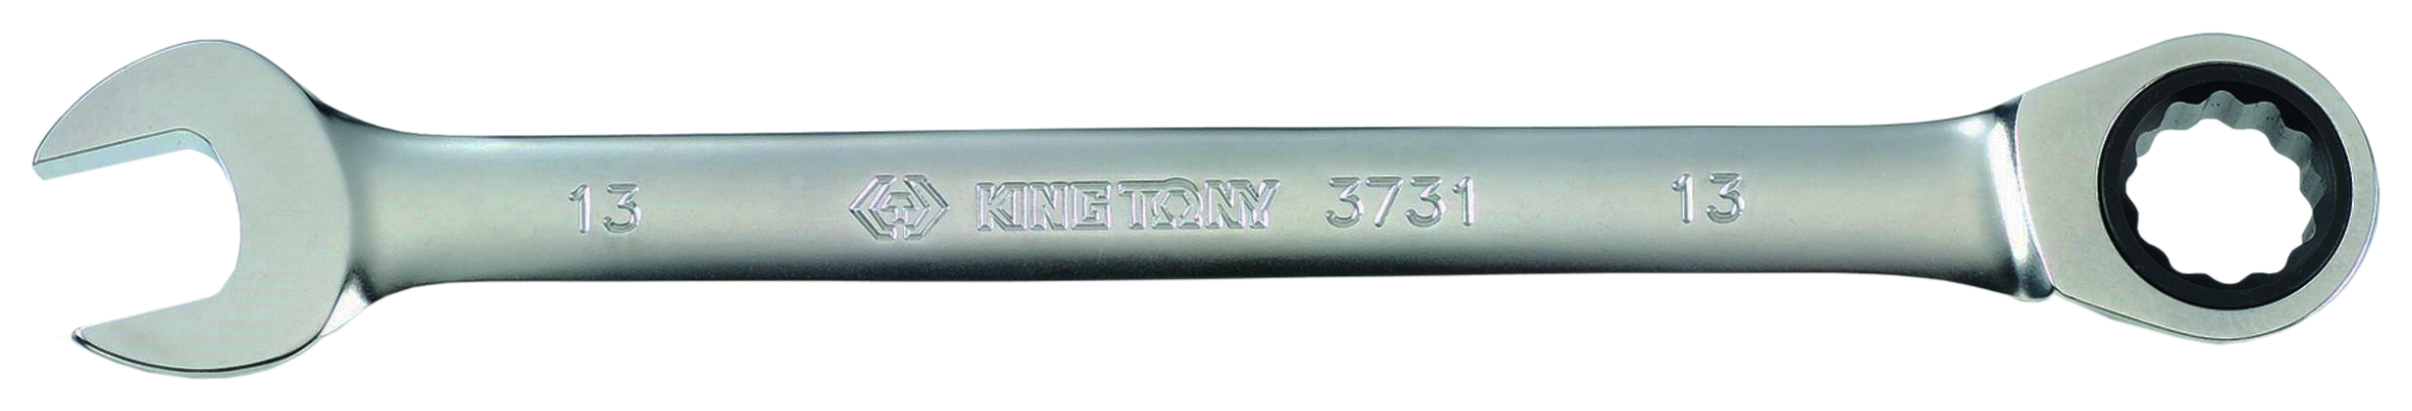 Комбинированный ключ KING TONY 373111M